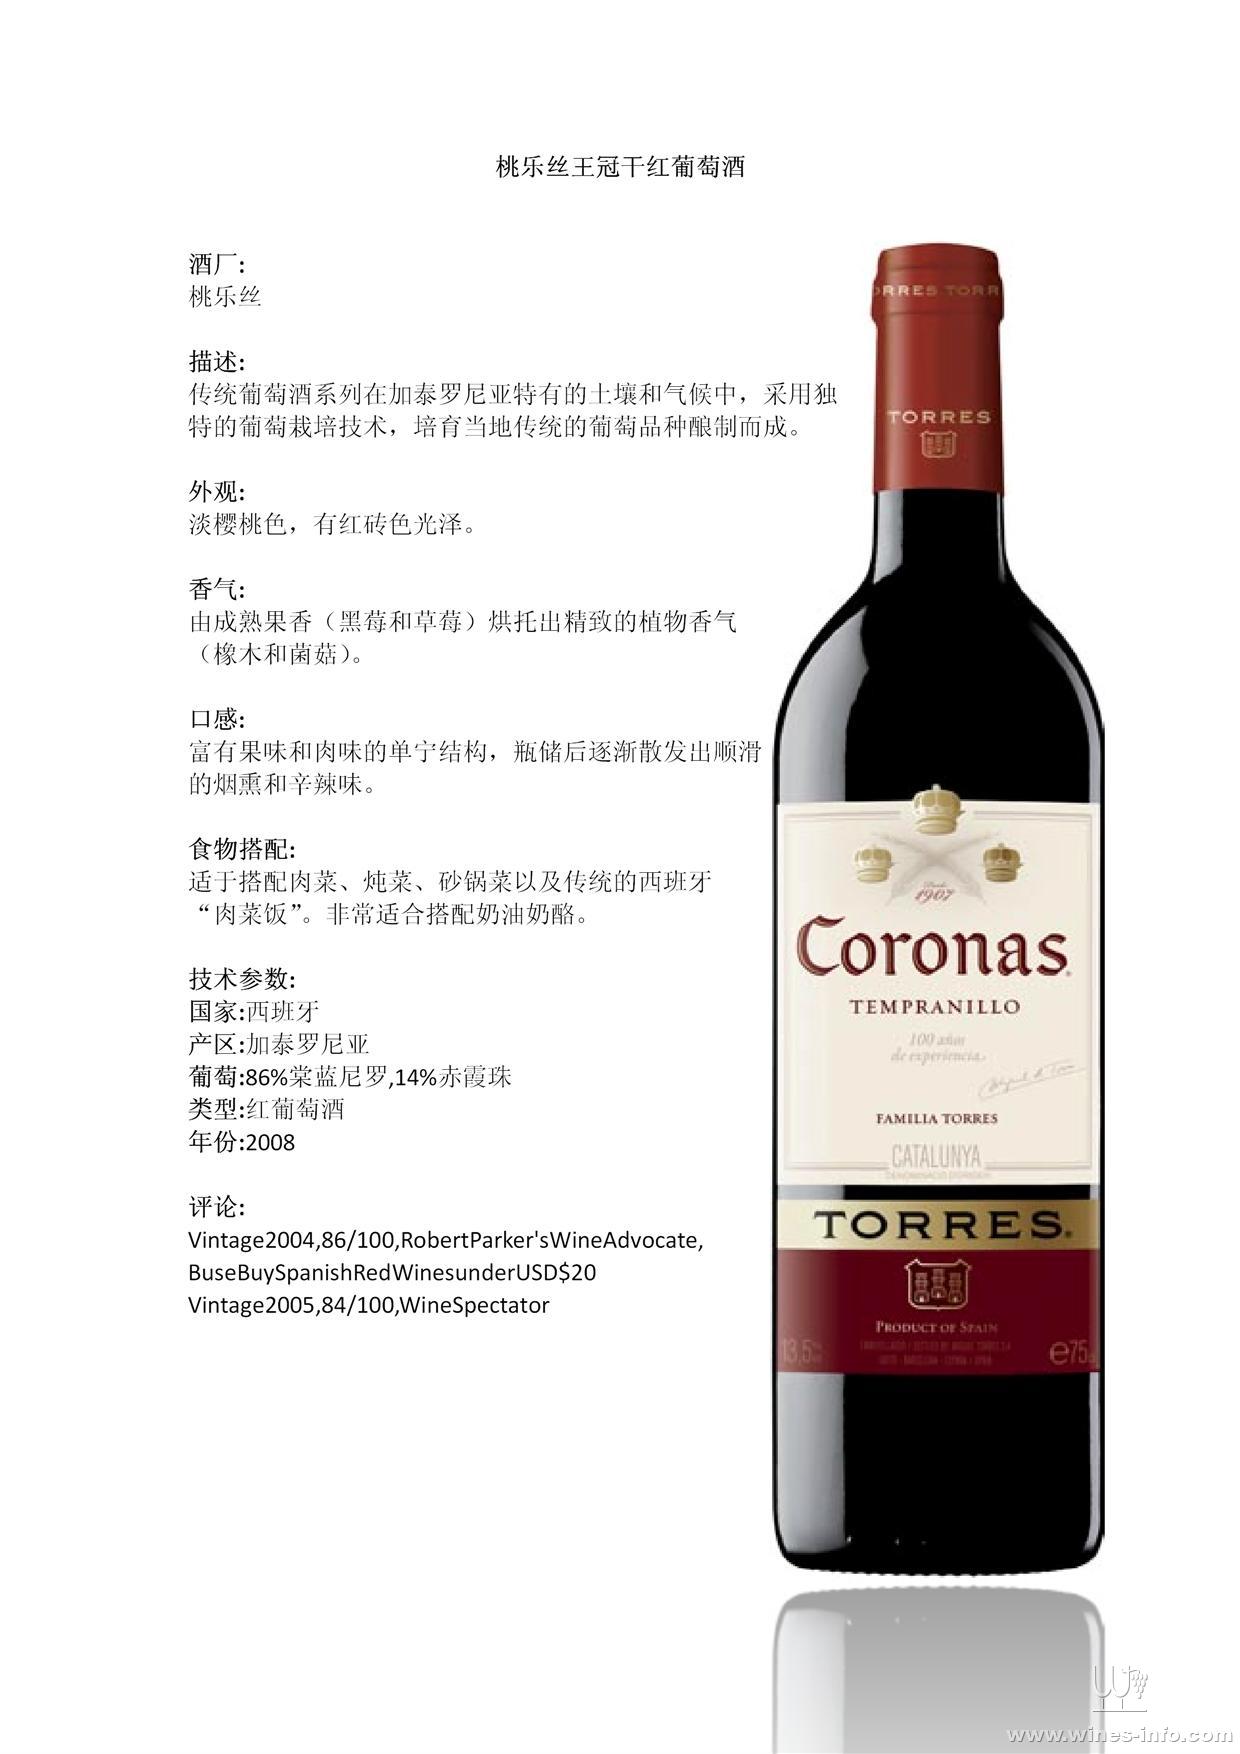 桃乐丝王冠干红葡萄酒:中国葡萄酒资讯网